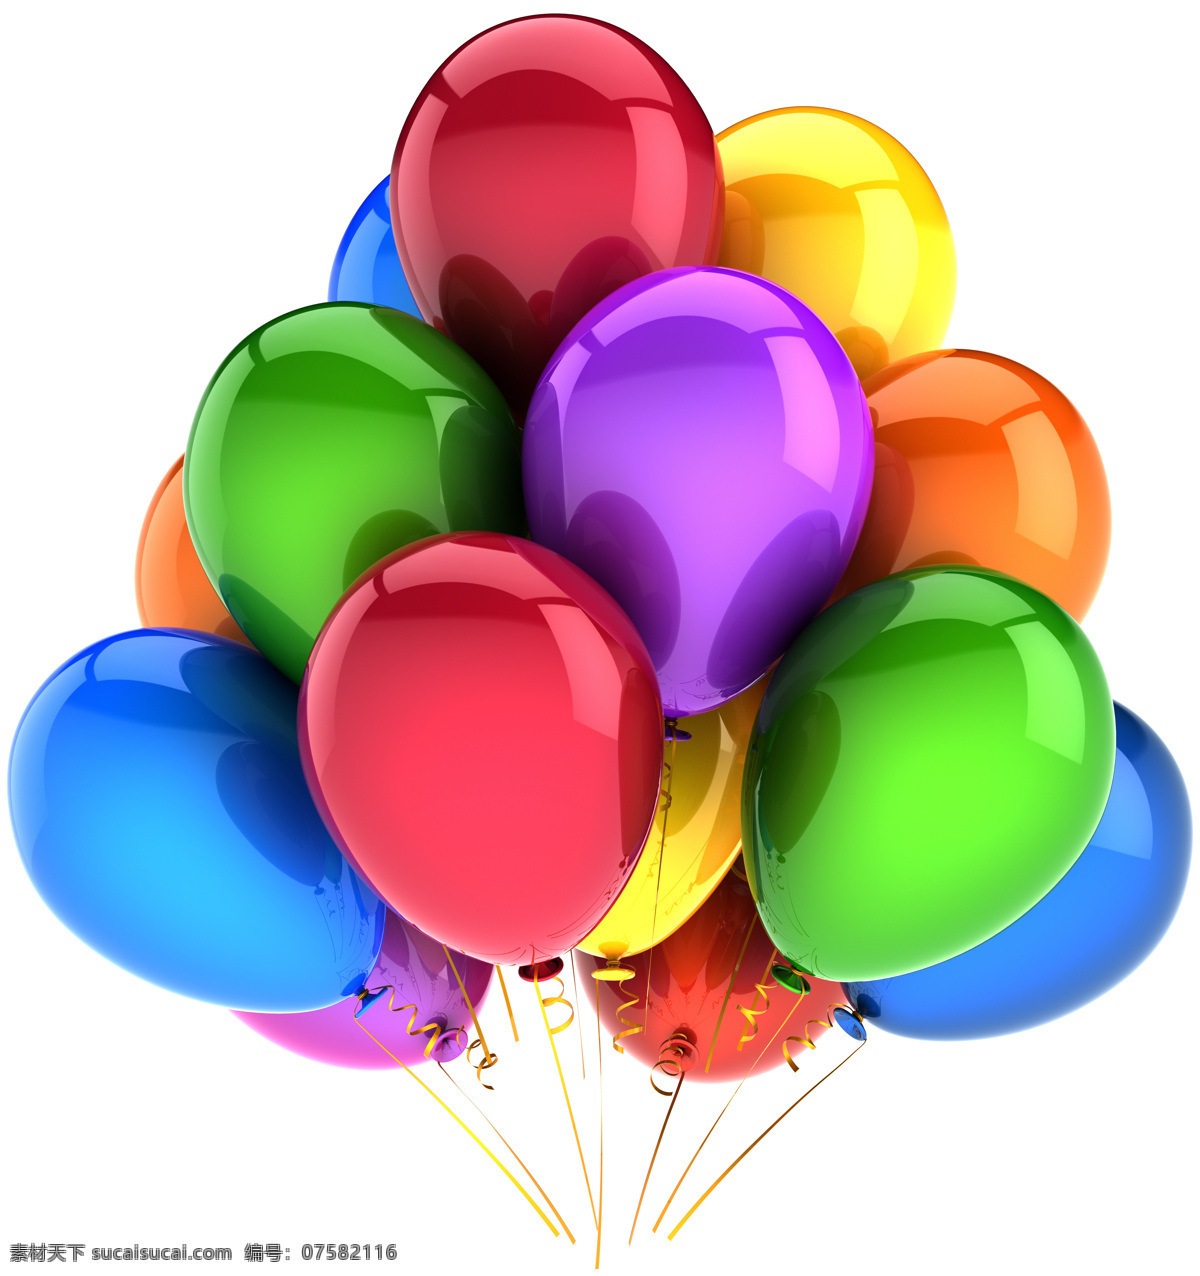 彩色 气球 彩色气球 喜庆气球 节日气球 节日素材 其他类别 生活百科 白色